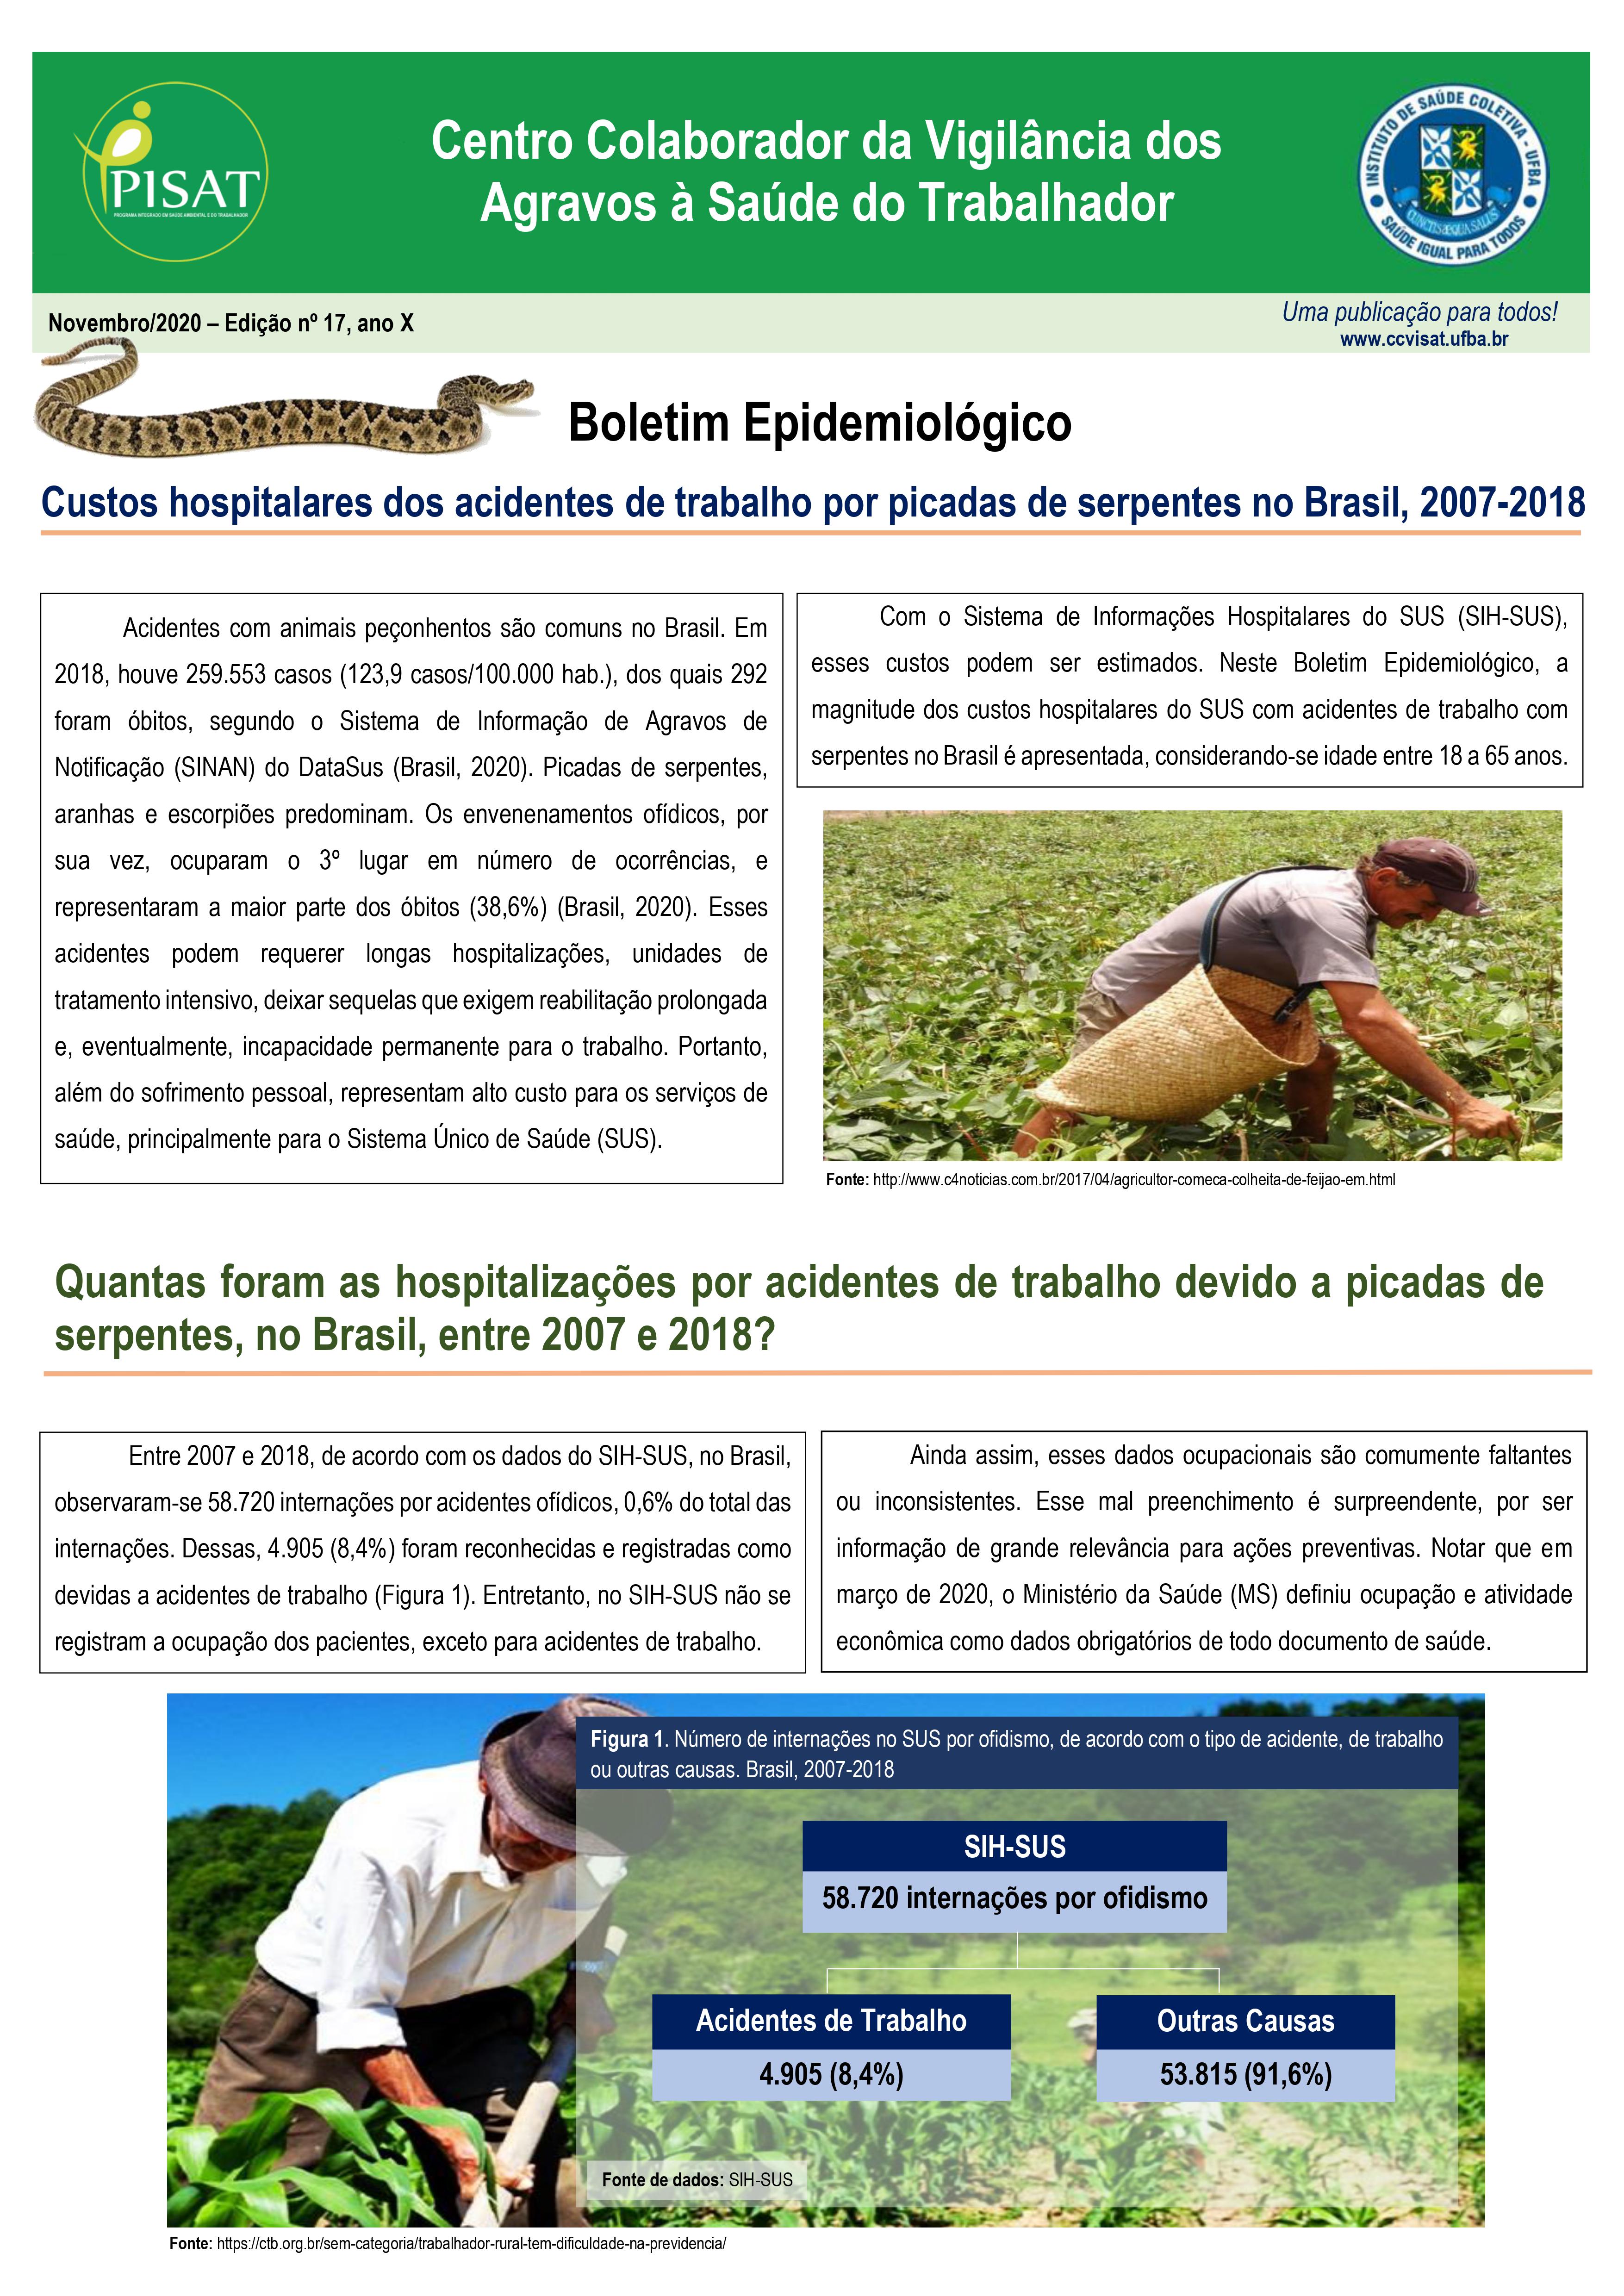 Boletim Epidemiológico | Custos hospitalares dos acidentes de trabalho por picadas de serpentes no Brasil, 2007-2018